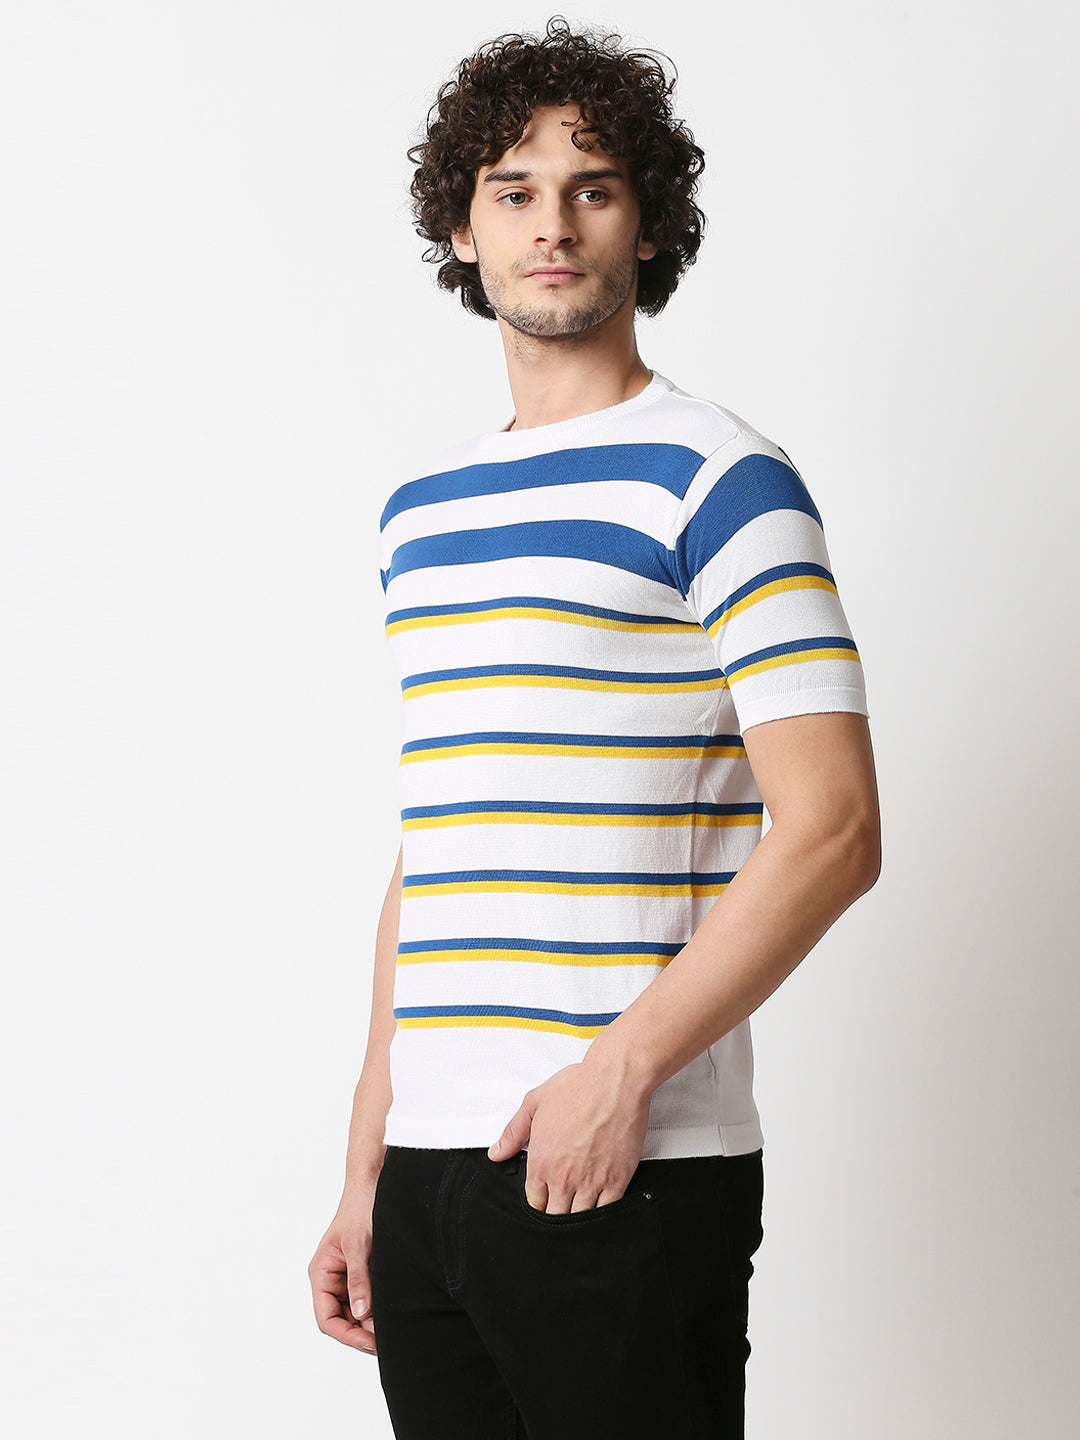 Buy Men's Blue, Yellow & White Strips Flat knit Slim Fit T-shirt